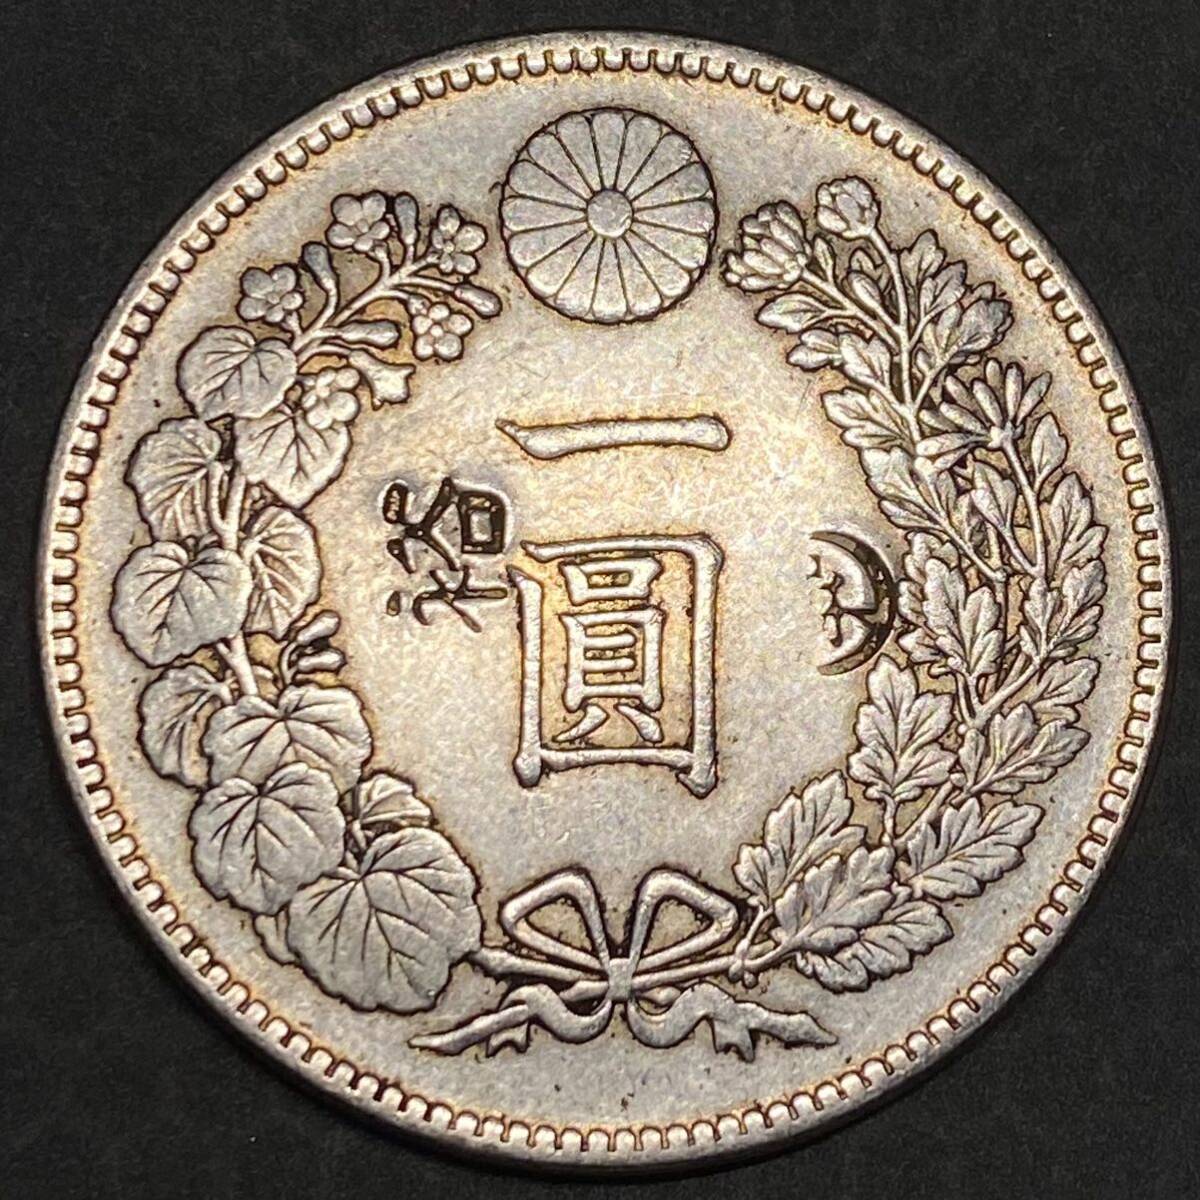 新1円銀貨 明治12年 刻印あり 大型 約27.22g 日本古銭 一圓 一円 銀貨 硬貨 貨幣 コインコレクションの画像1